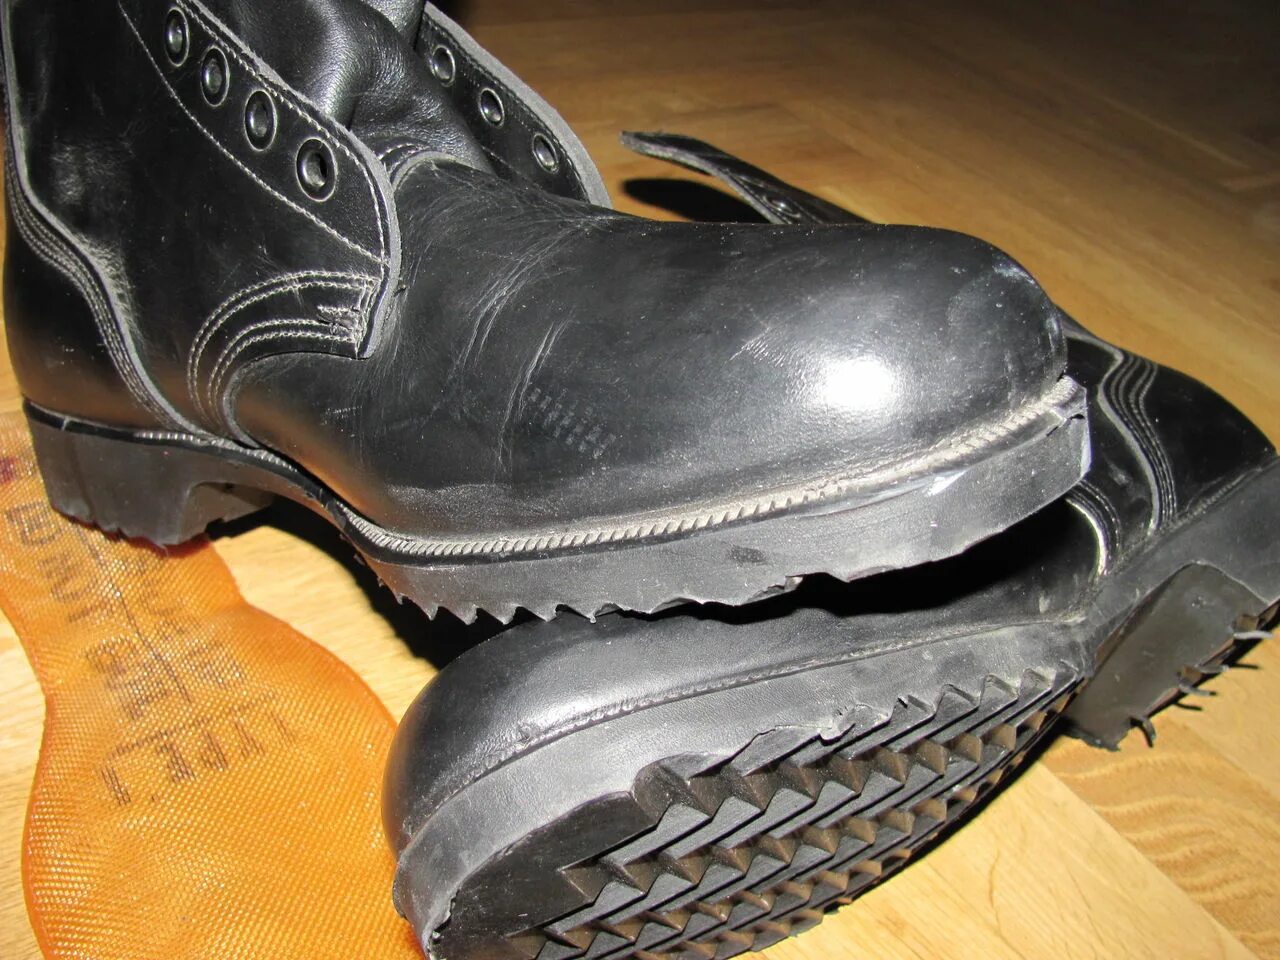 1 47 48. Советские ботинки. Лыжные ботинки Classic made in Czechoslovakia. Венгерские военные ботинки 1980 года. Ботинки для солдат и Матросов, Тип б.